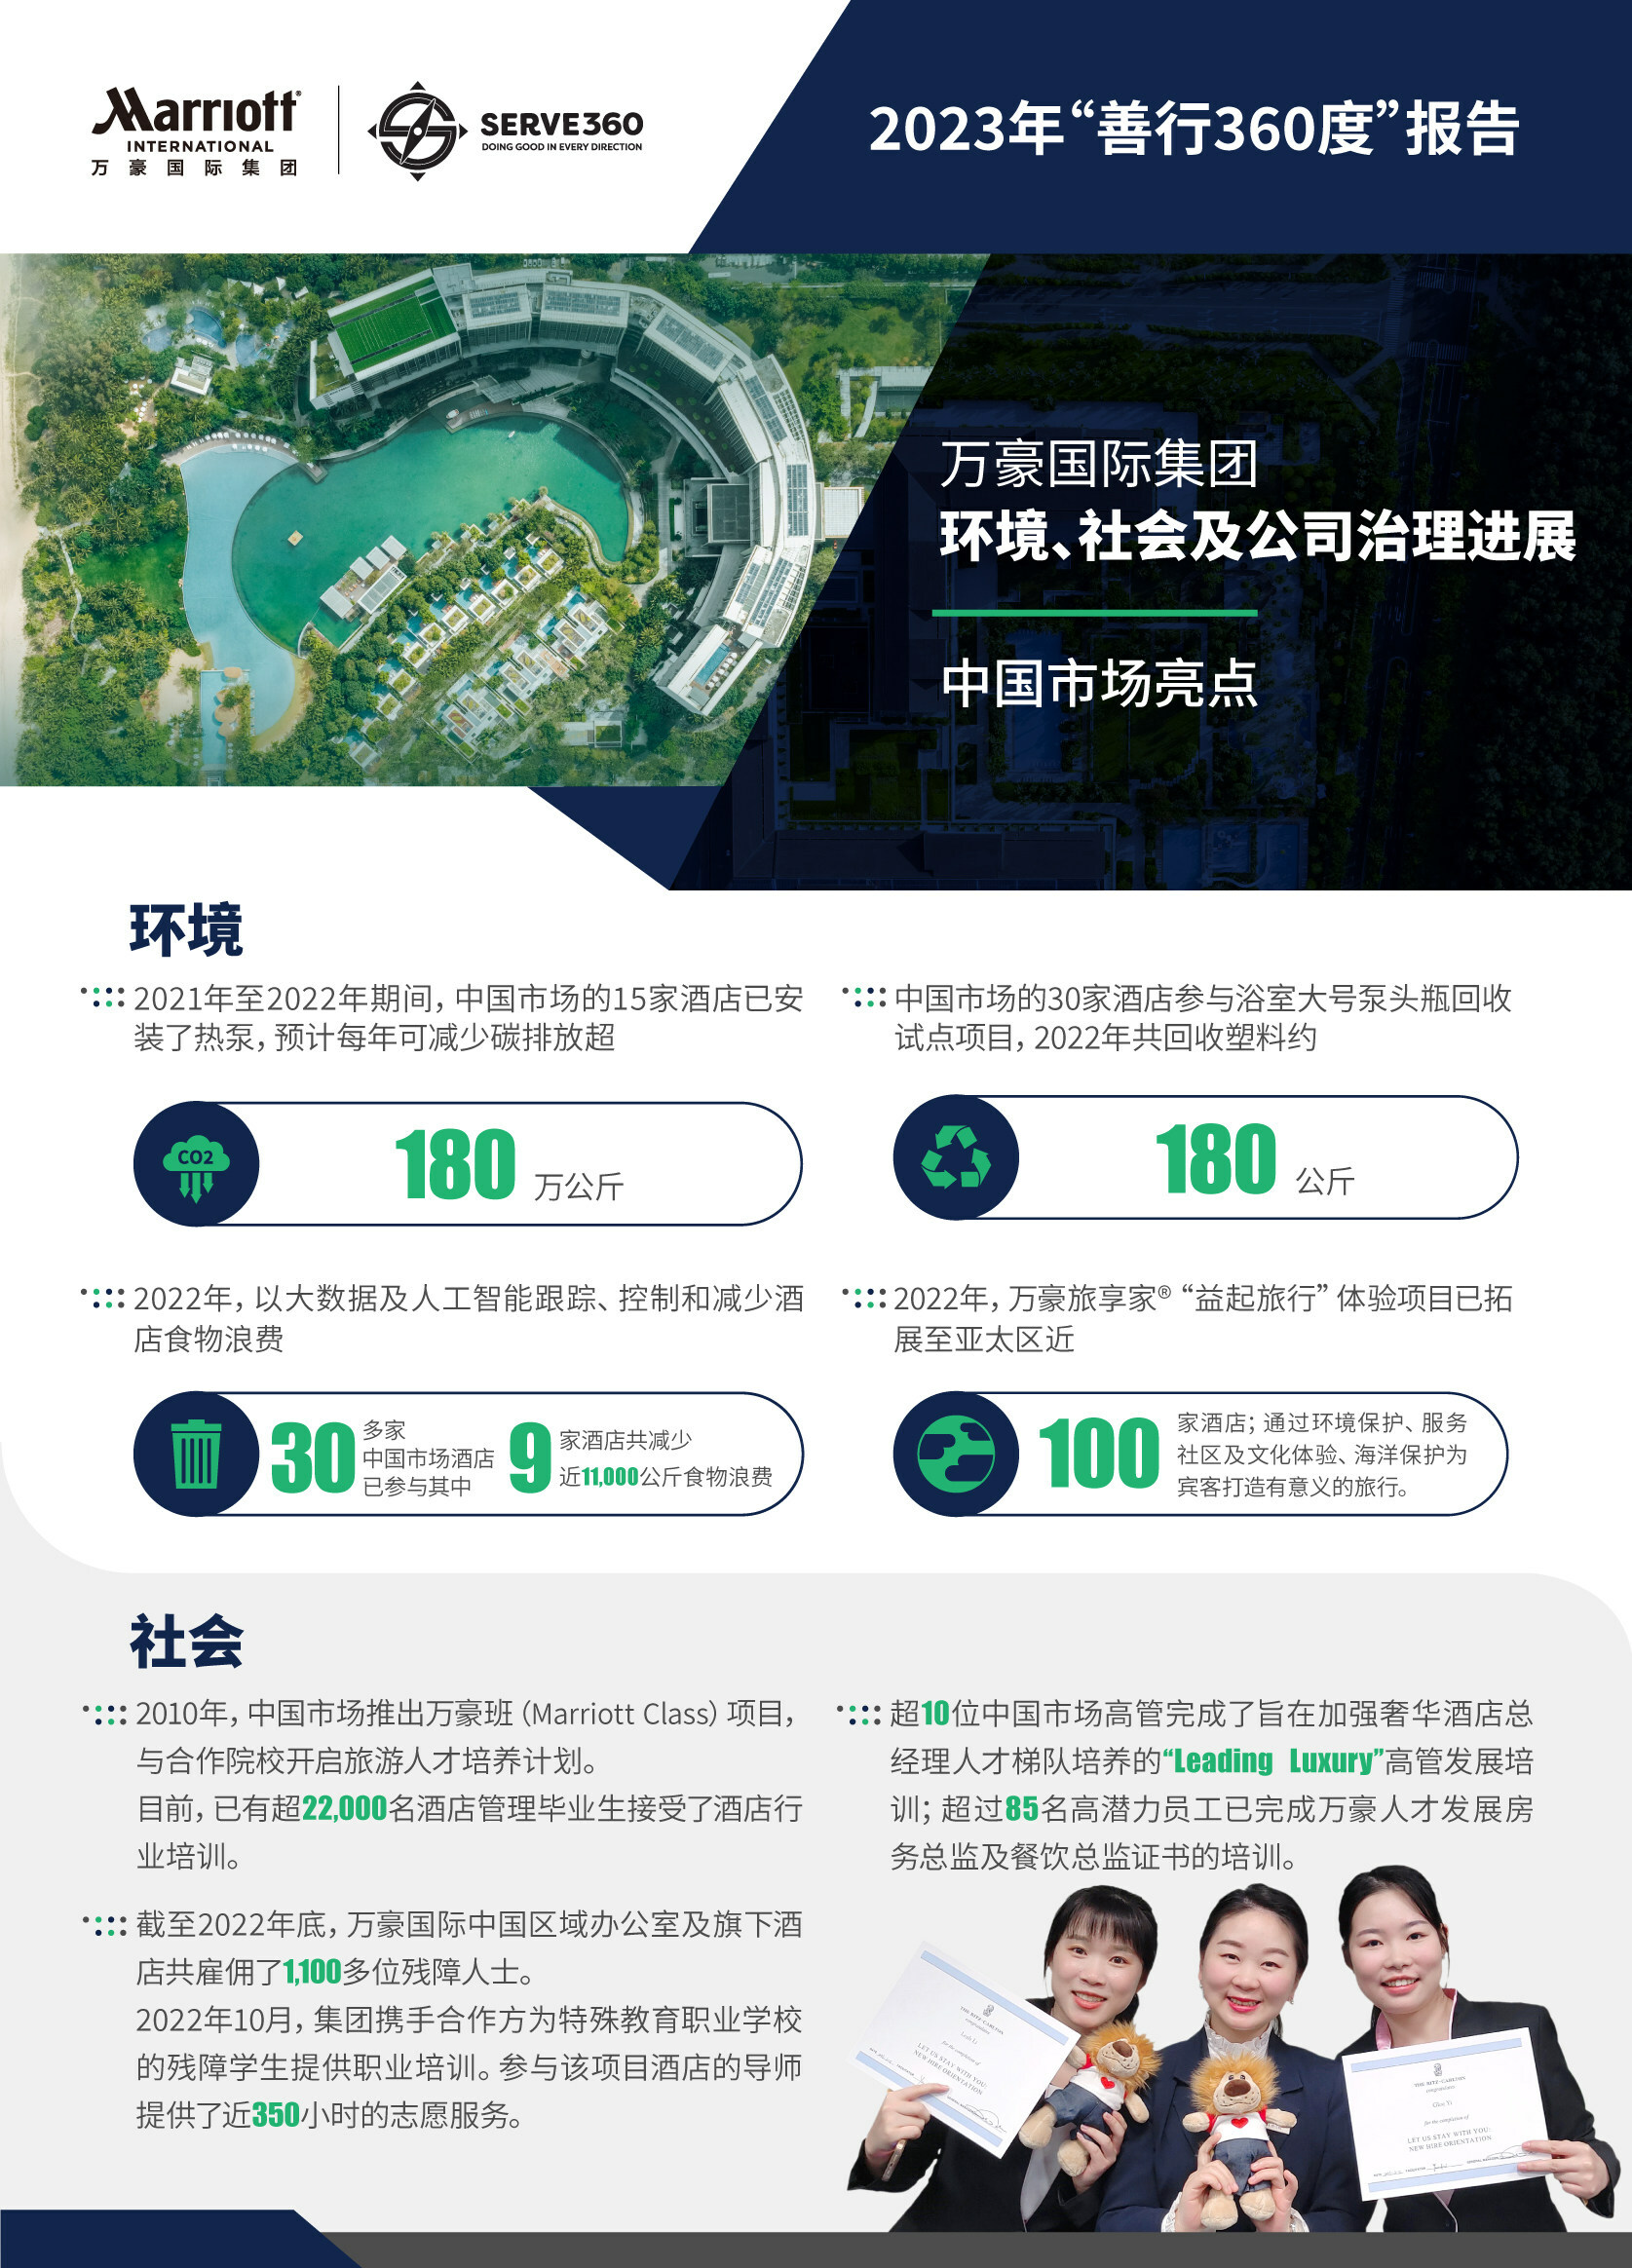 中国市场酒店的可持续发展措施信息图表